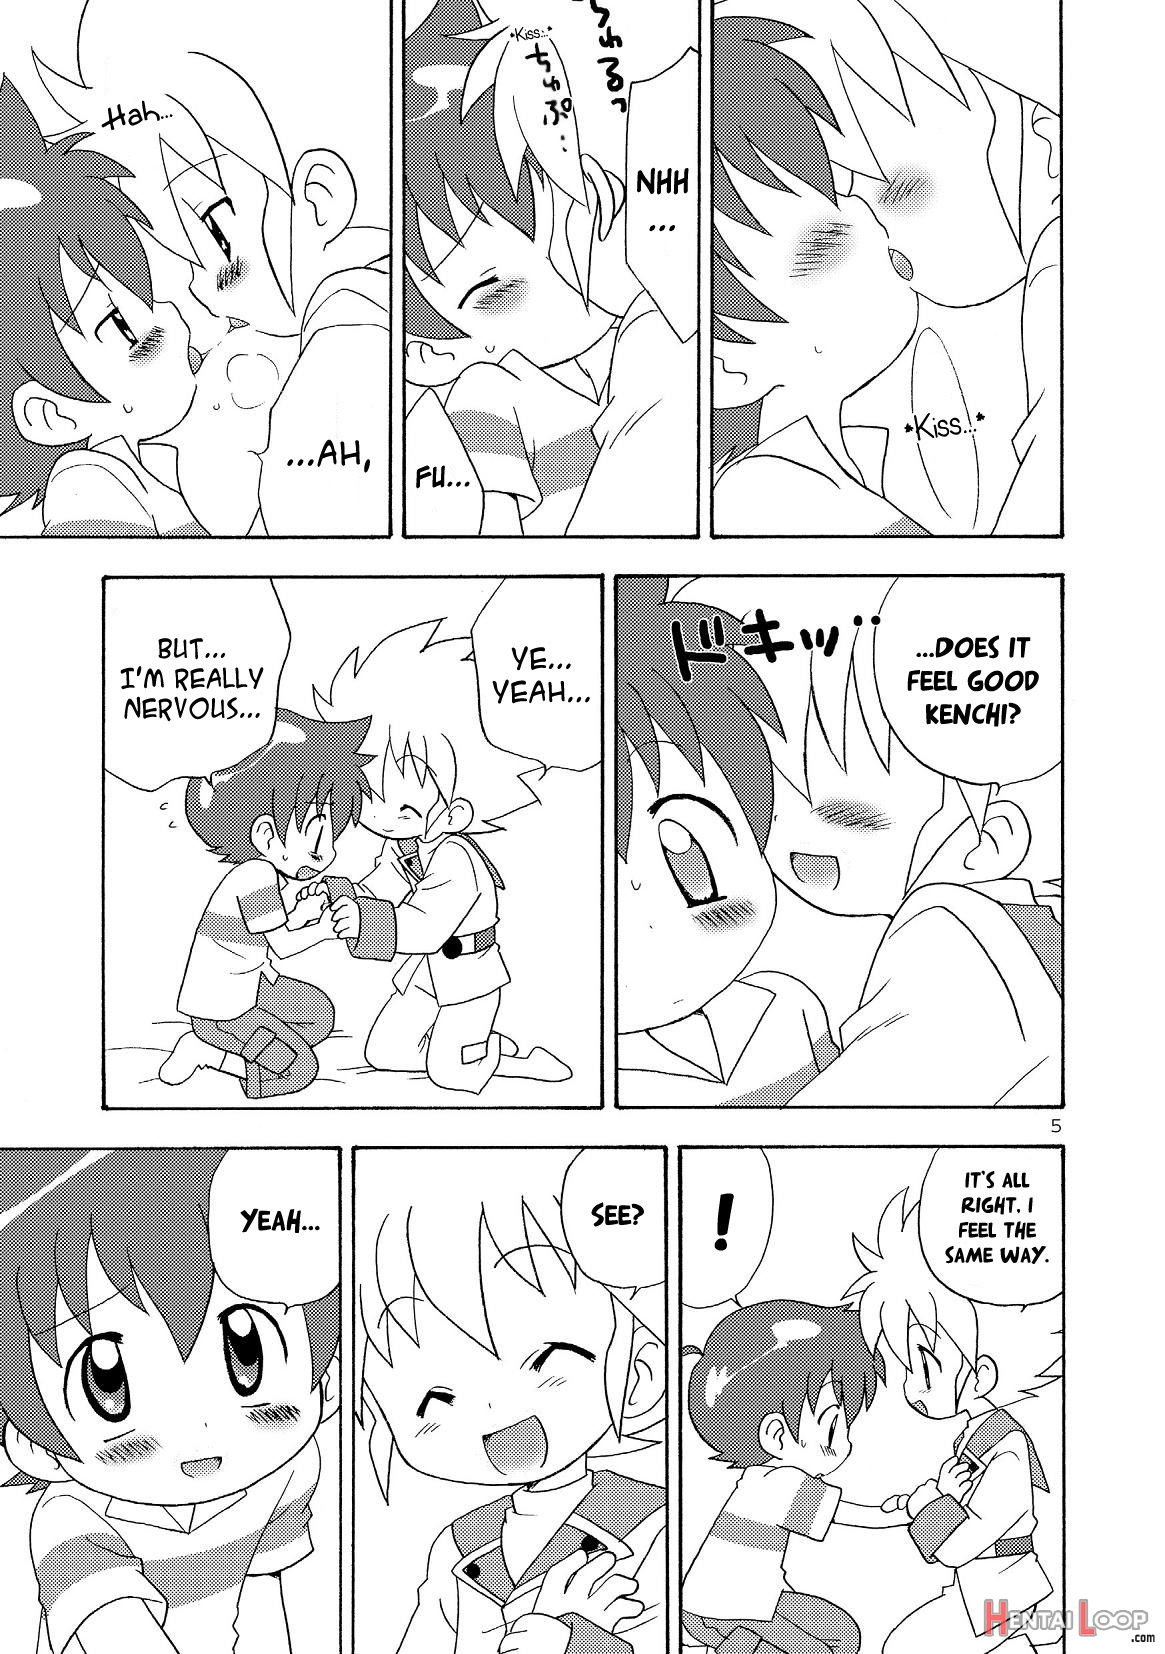 Fuwafuwa page 5